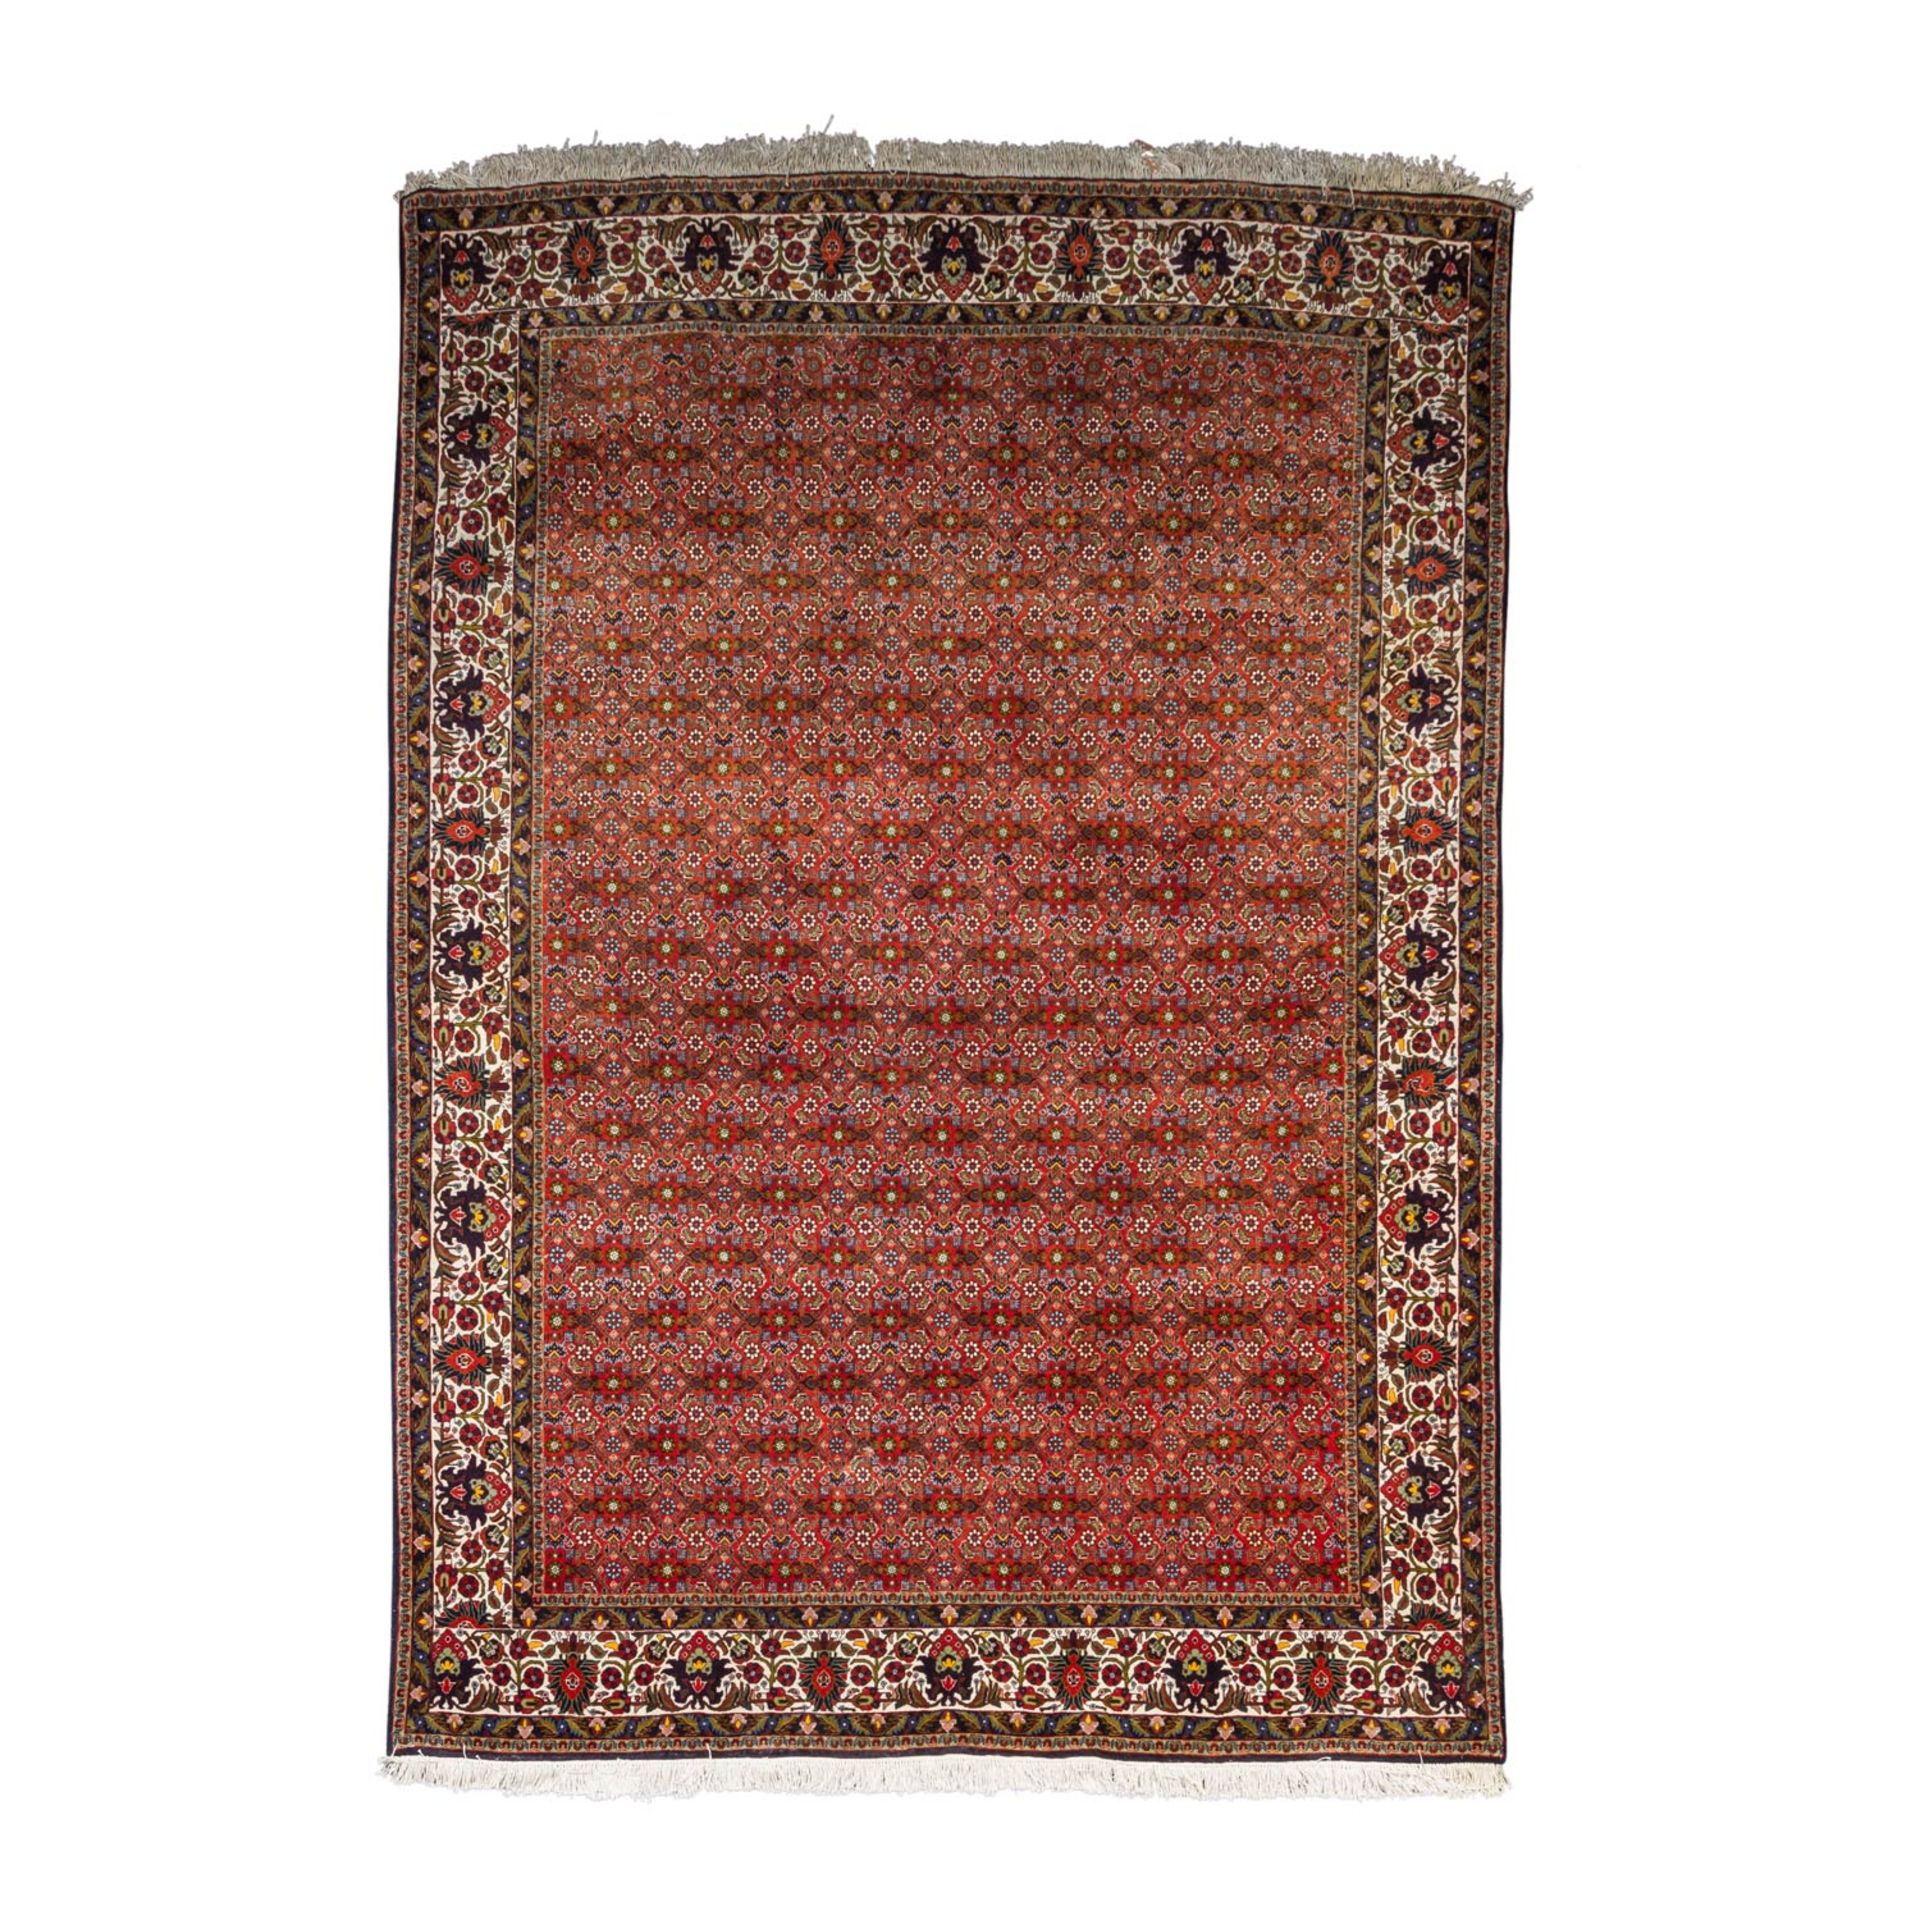 Orientteppich. MOUD/IRAN, 20. Jh., ca. 200x205 cm.Netzartig überspannt ein Herati-Muster das rote